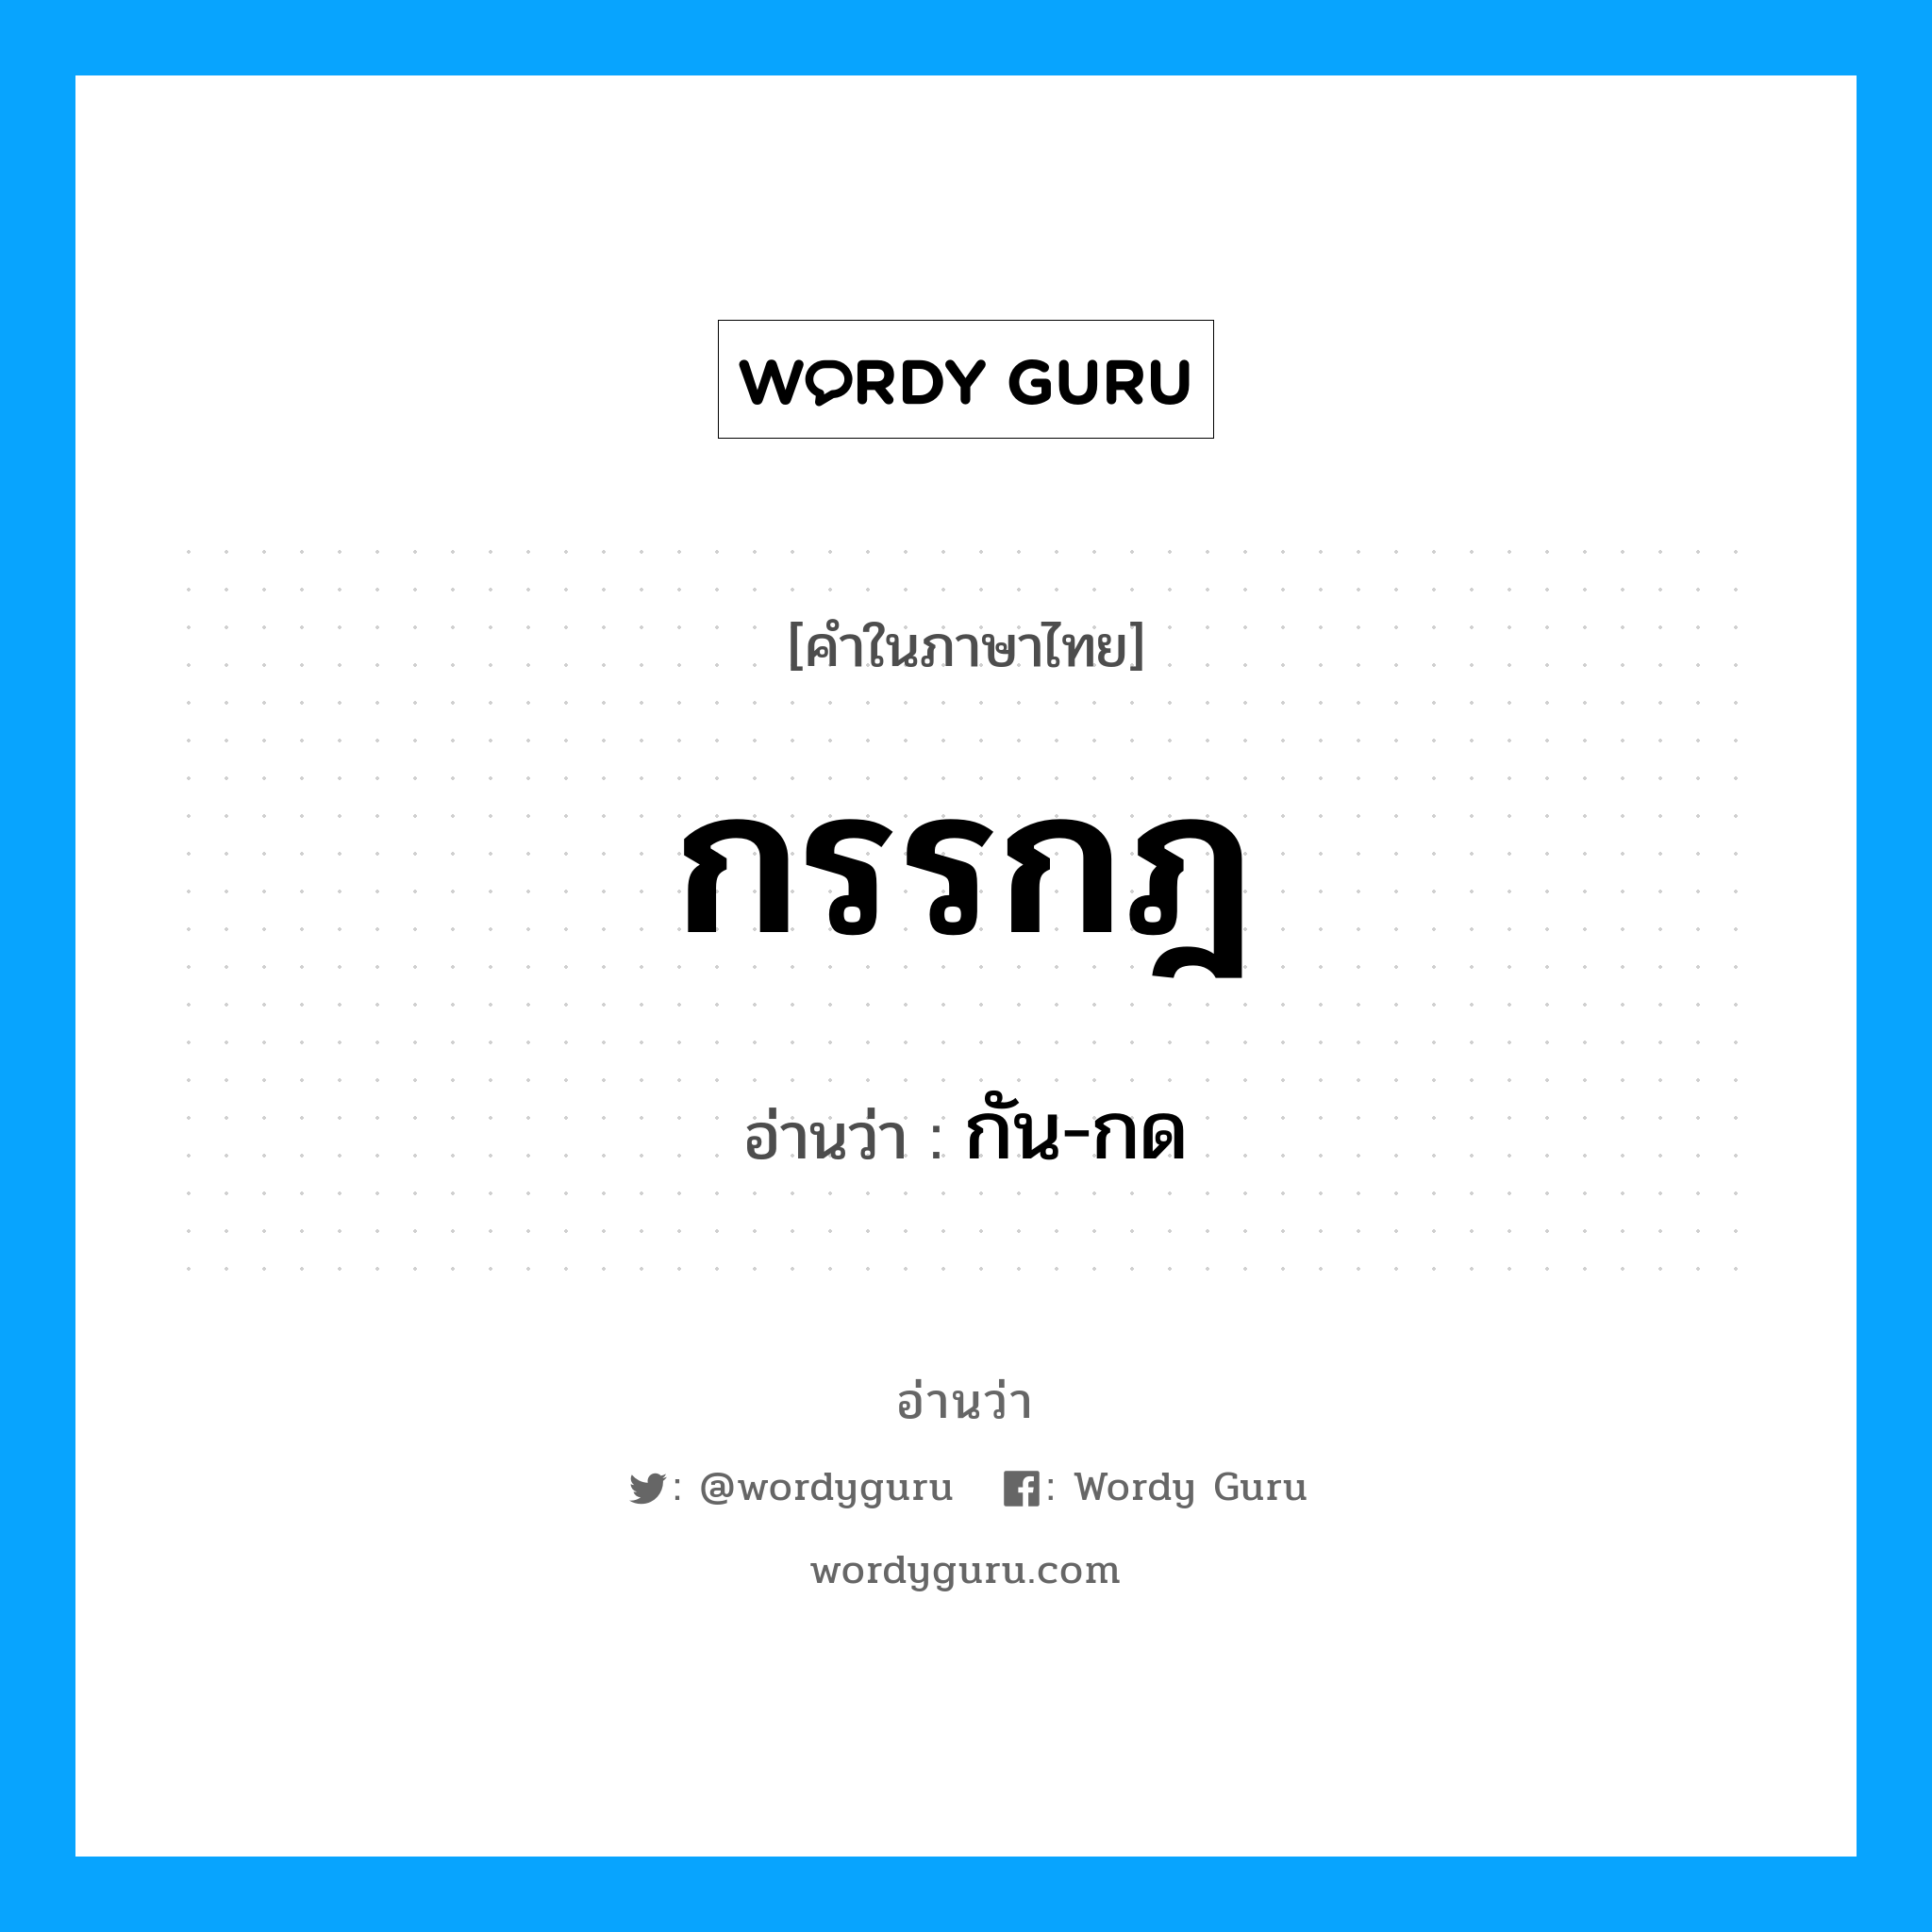 กัน-กด เป็นคำอ่านของคำไหน?, คำในภาษาไทย กัน-กด อ่านว่า กรรกฎ